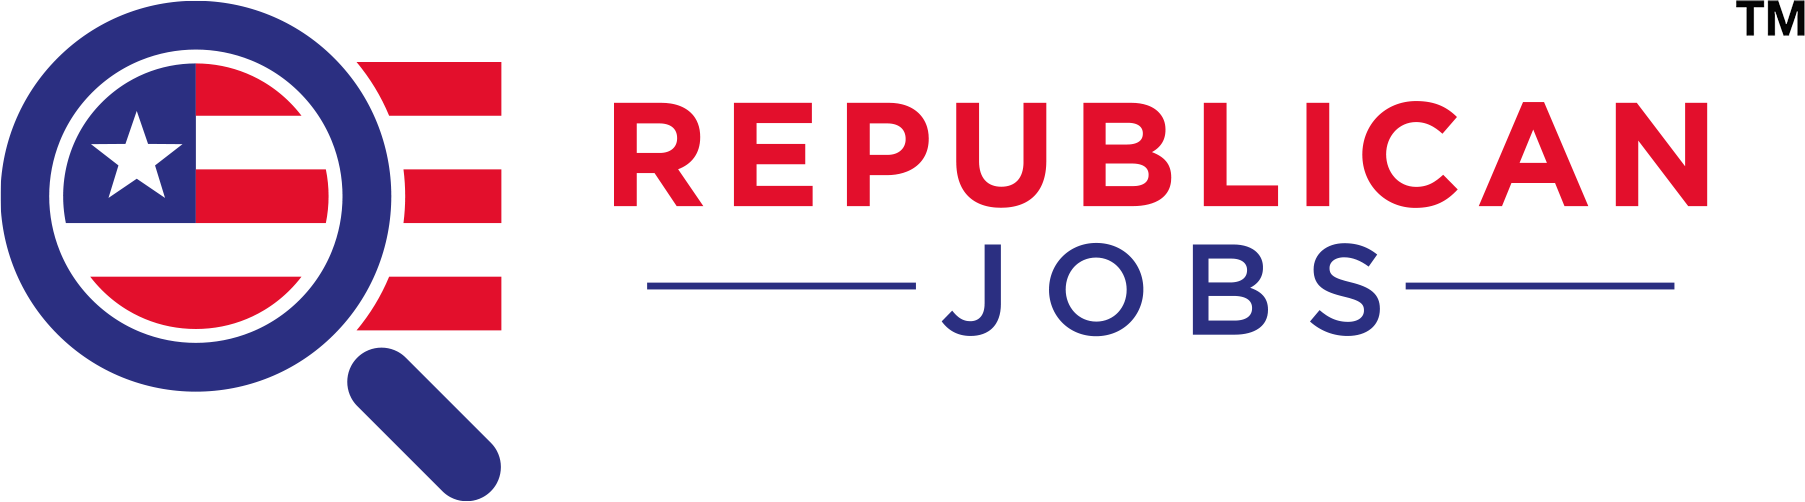 Republican jobs in Palo Alto California jobs